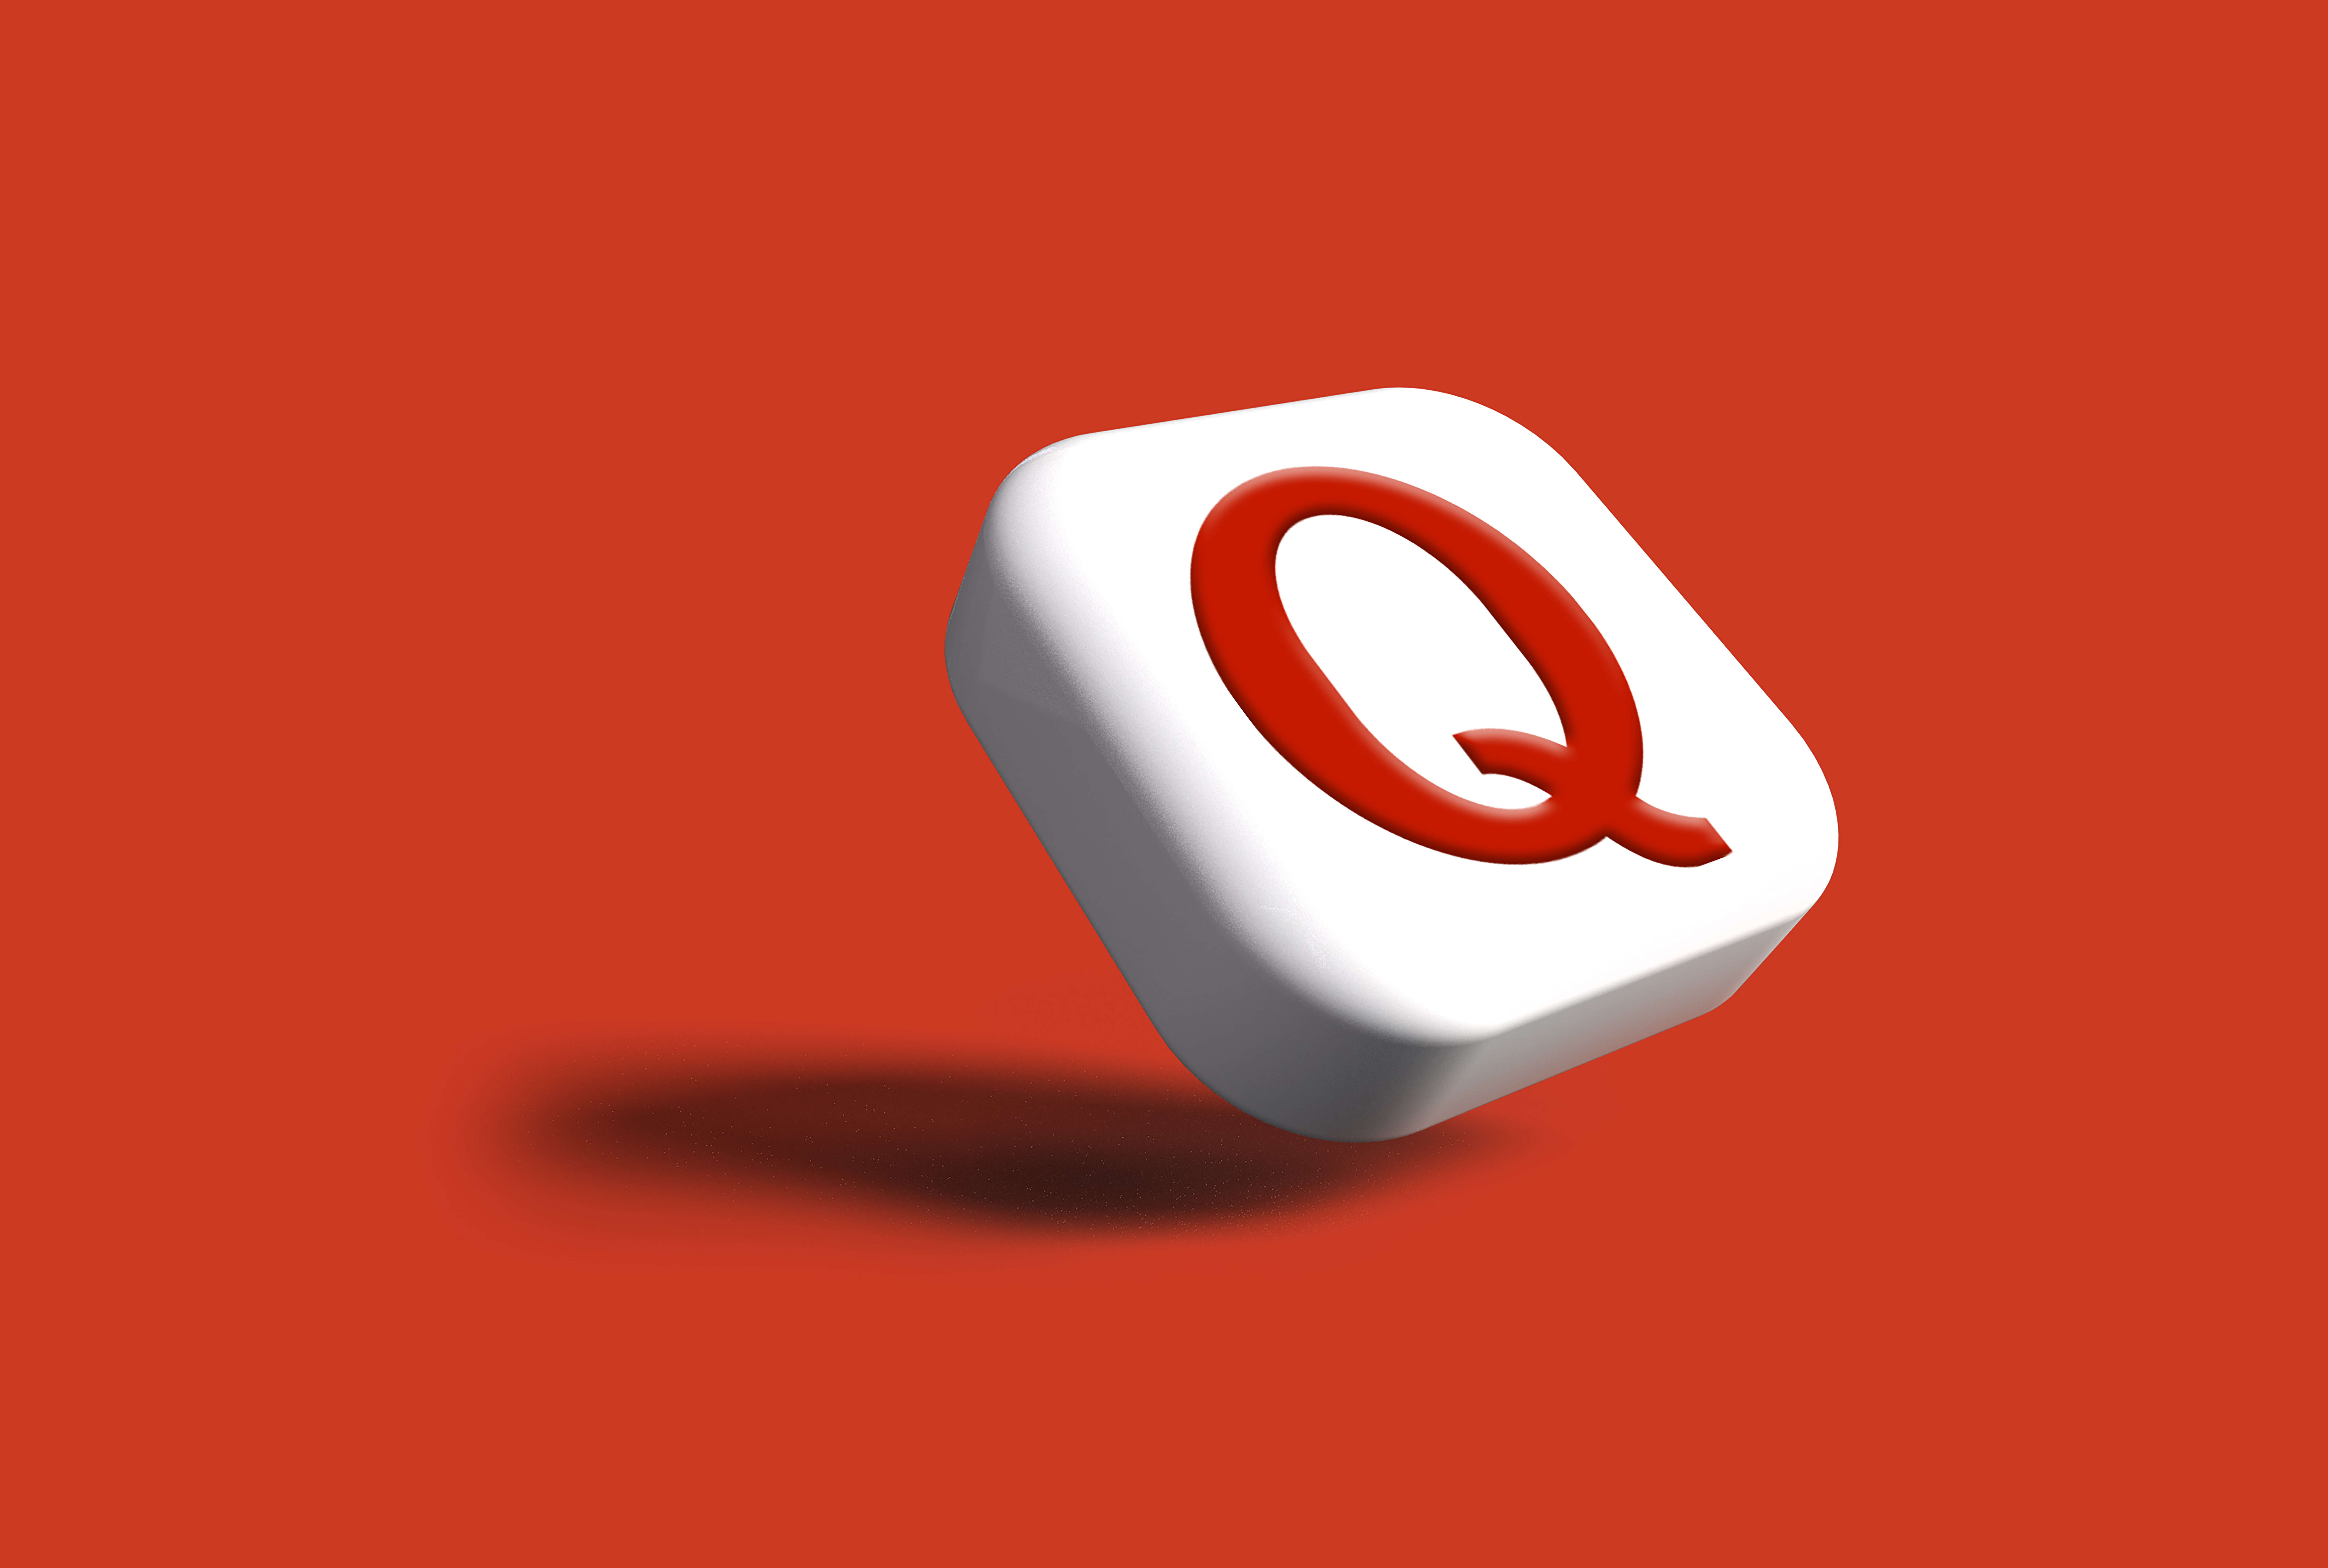 Quora "Q" symbol against a red background